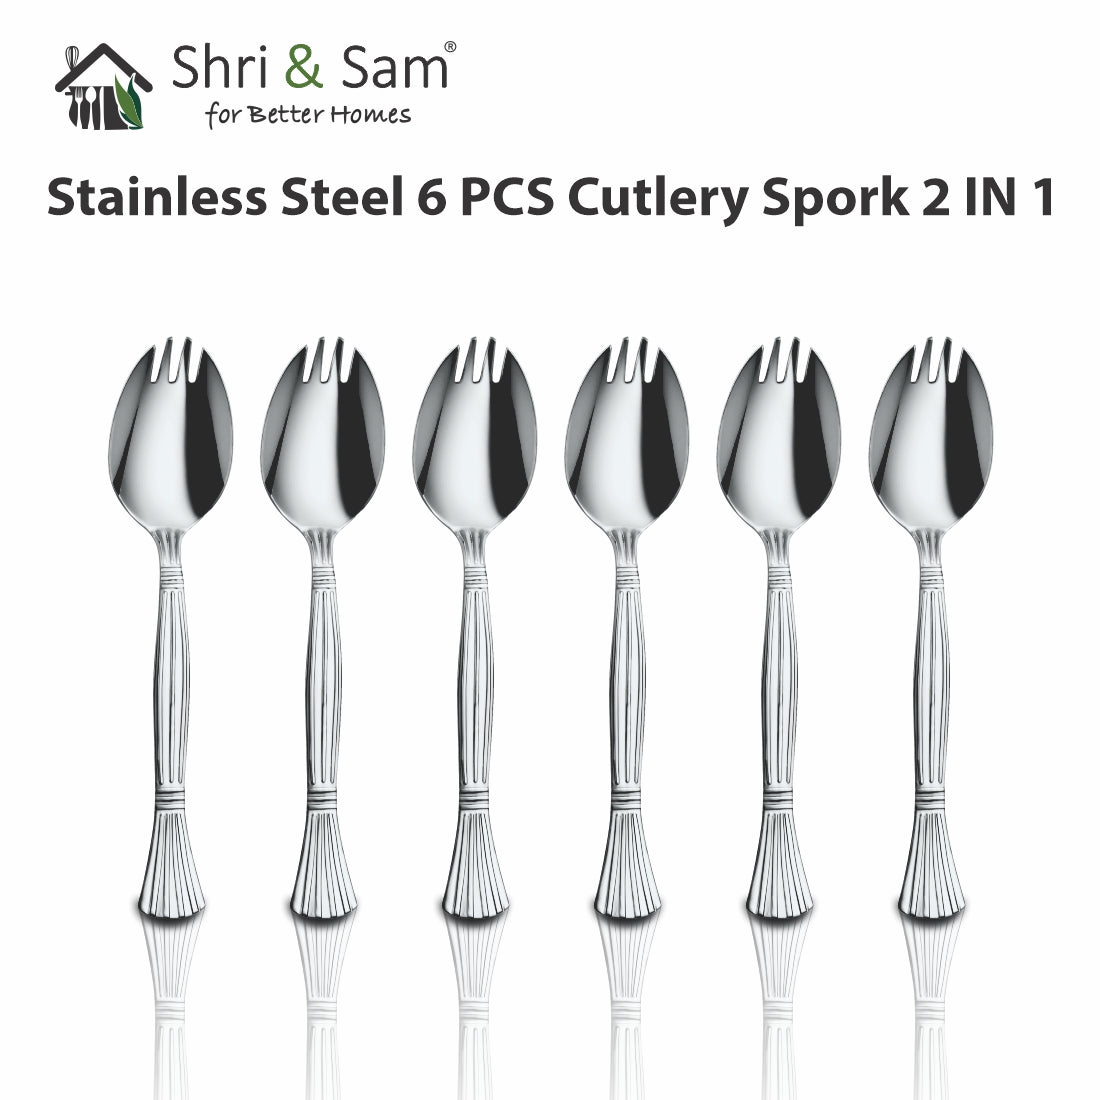 Stainless Steel 6 PCS Cutlery Spork 2 IN 1